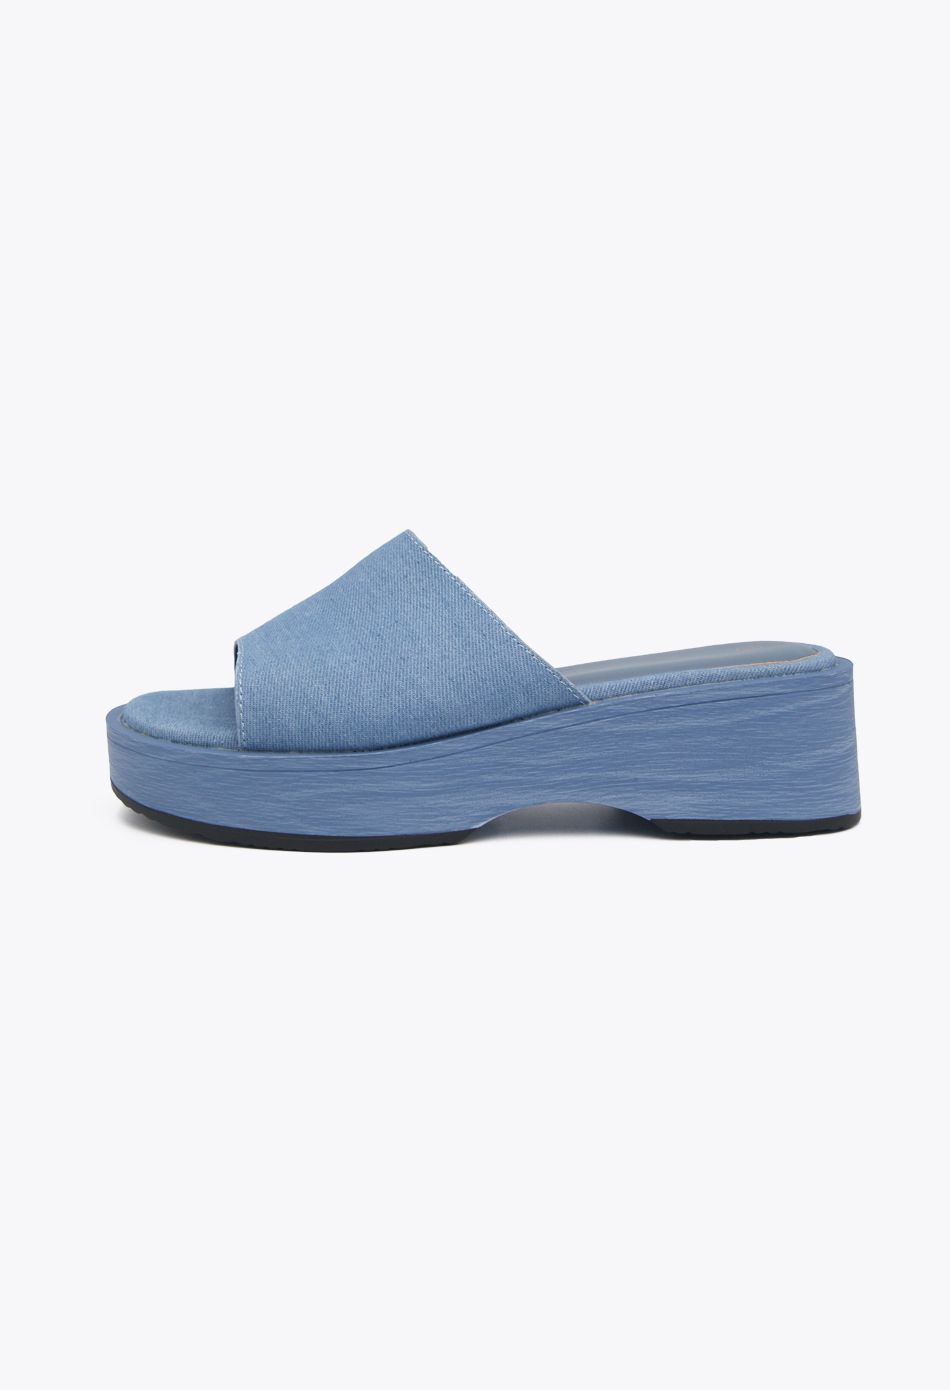 Πλατφόρμες Μονόχρωμες Μπλε / F1516-blue Ανοιχτά Παπούτσια joya.gr